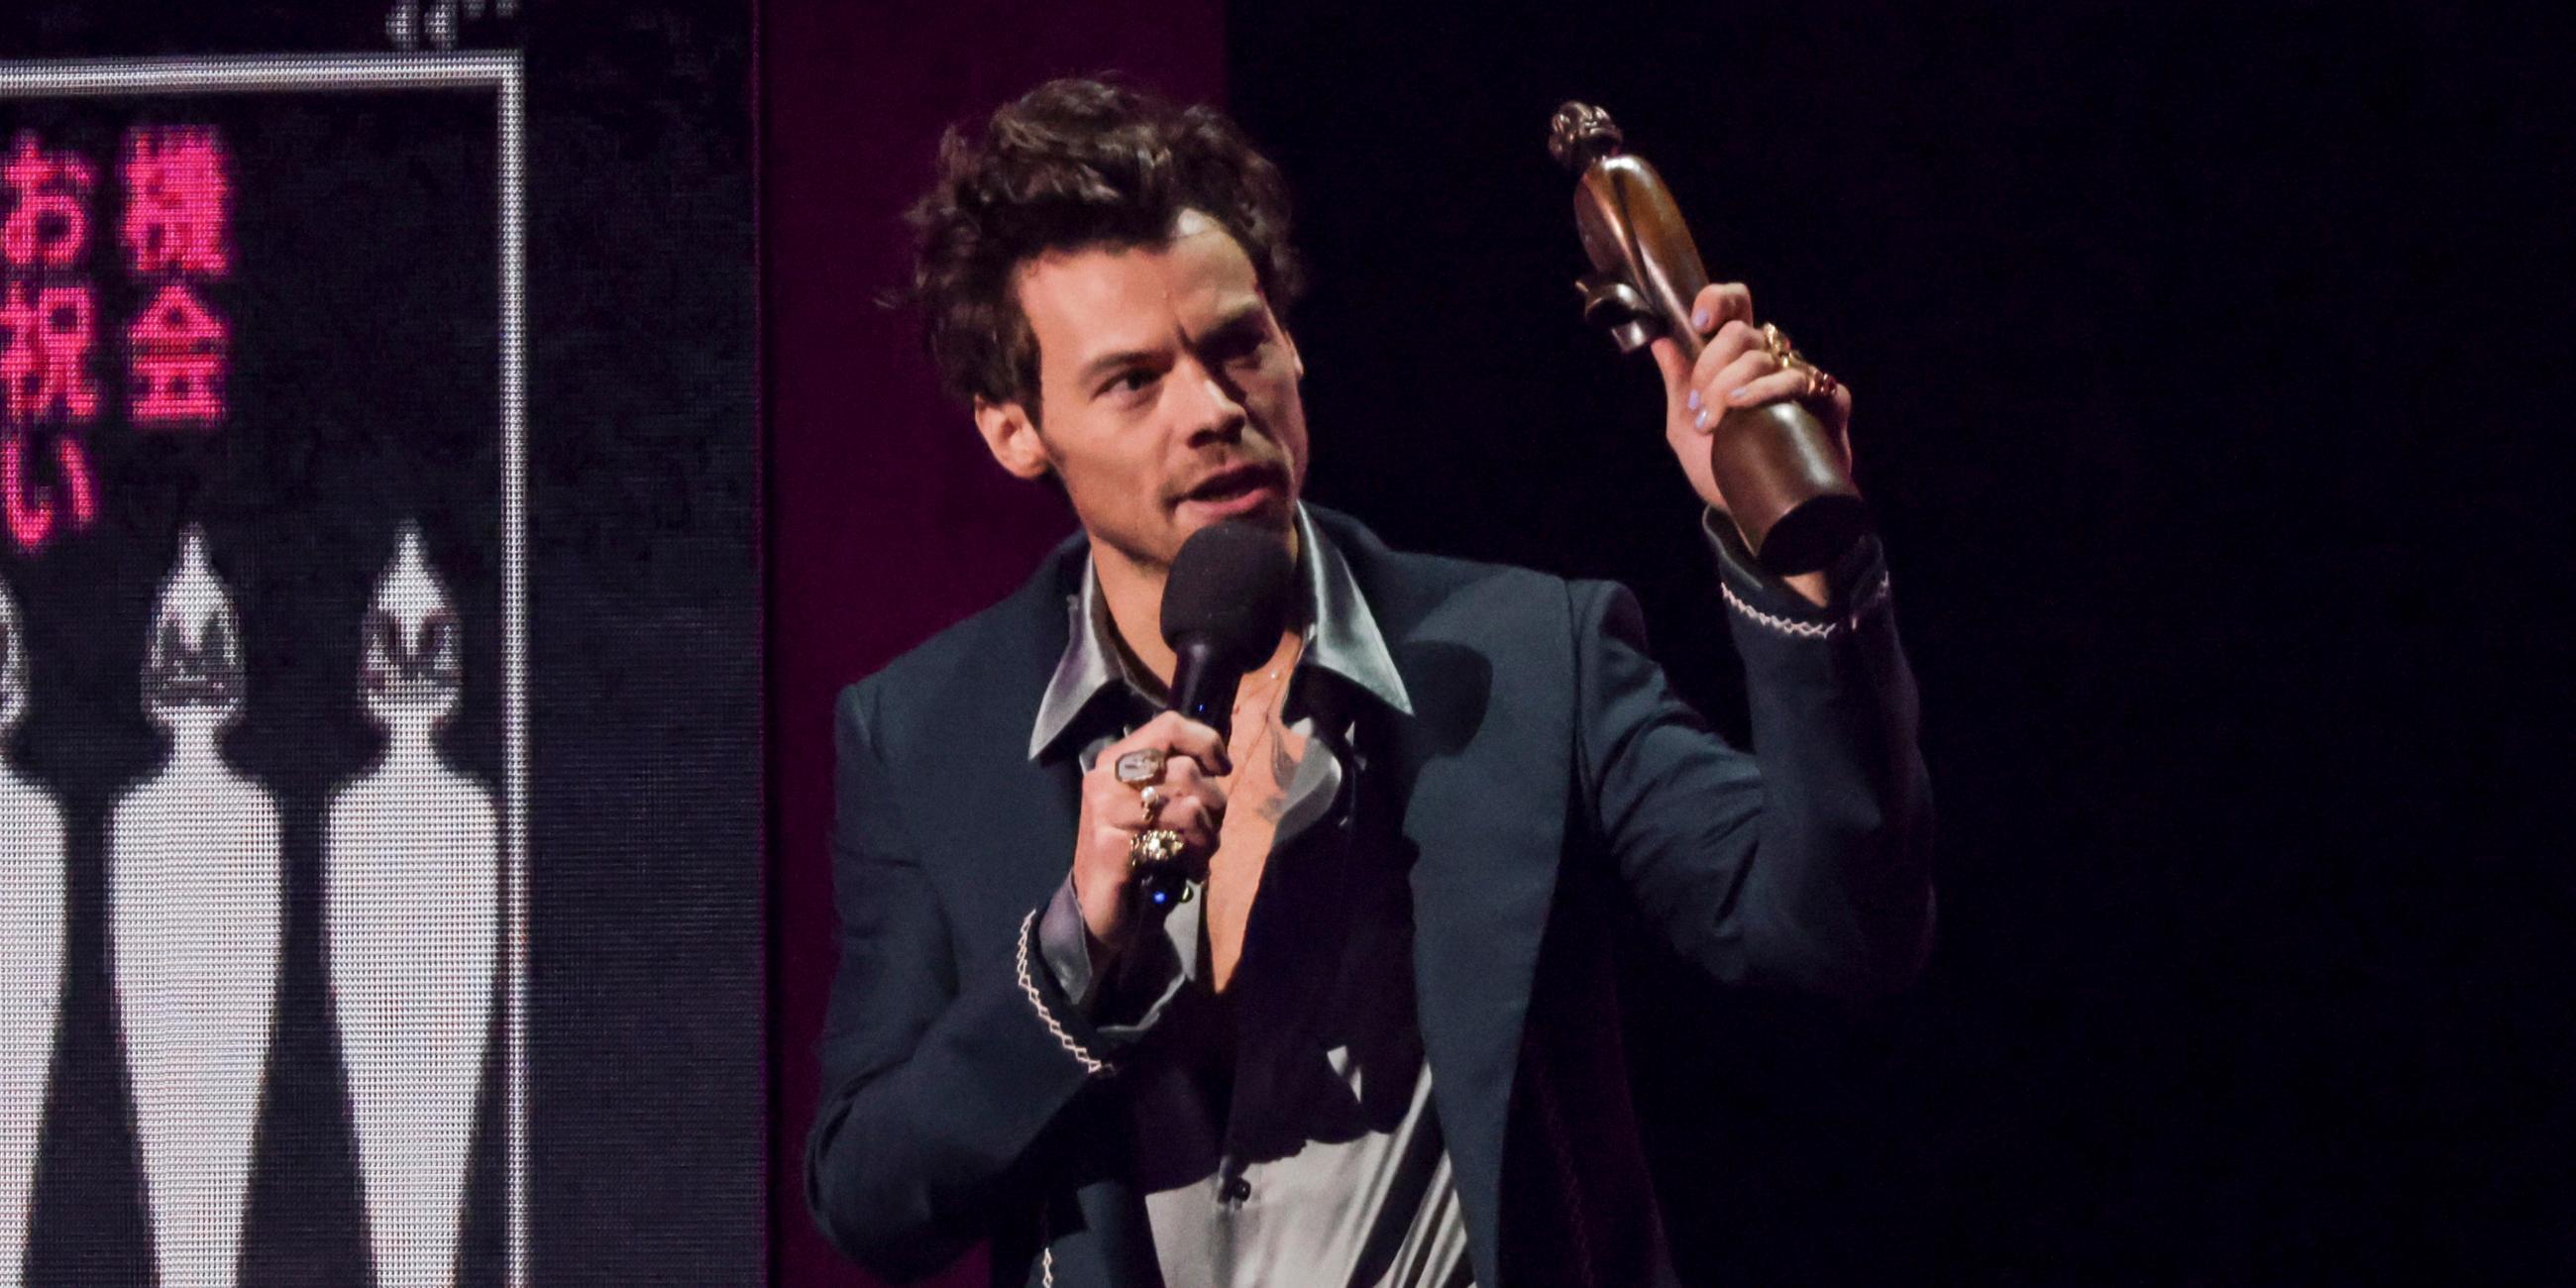 Harry Styles hält die Trophäe für "Artist of the Year" bei den Brit Awards in London